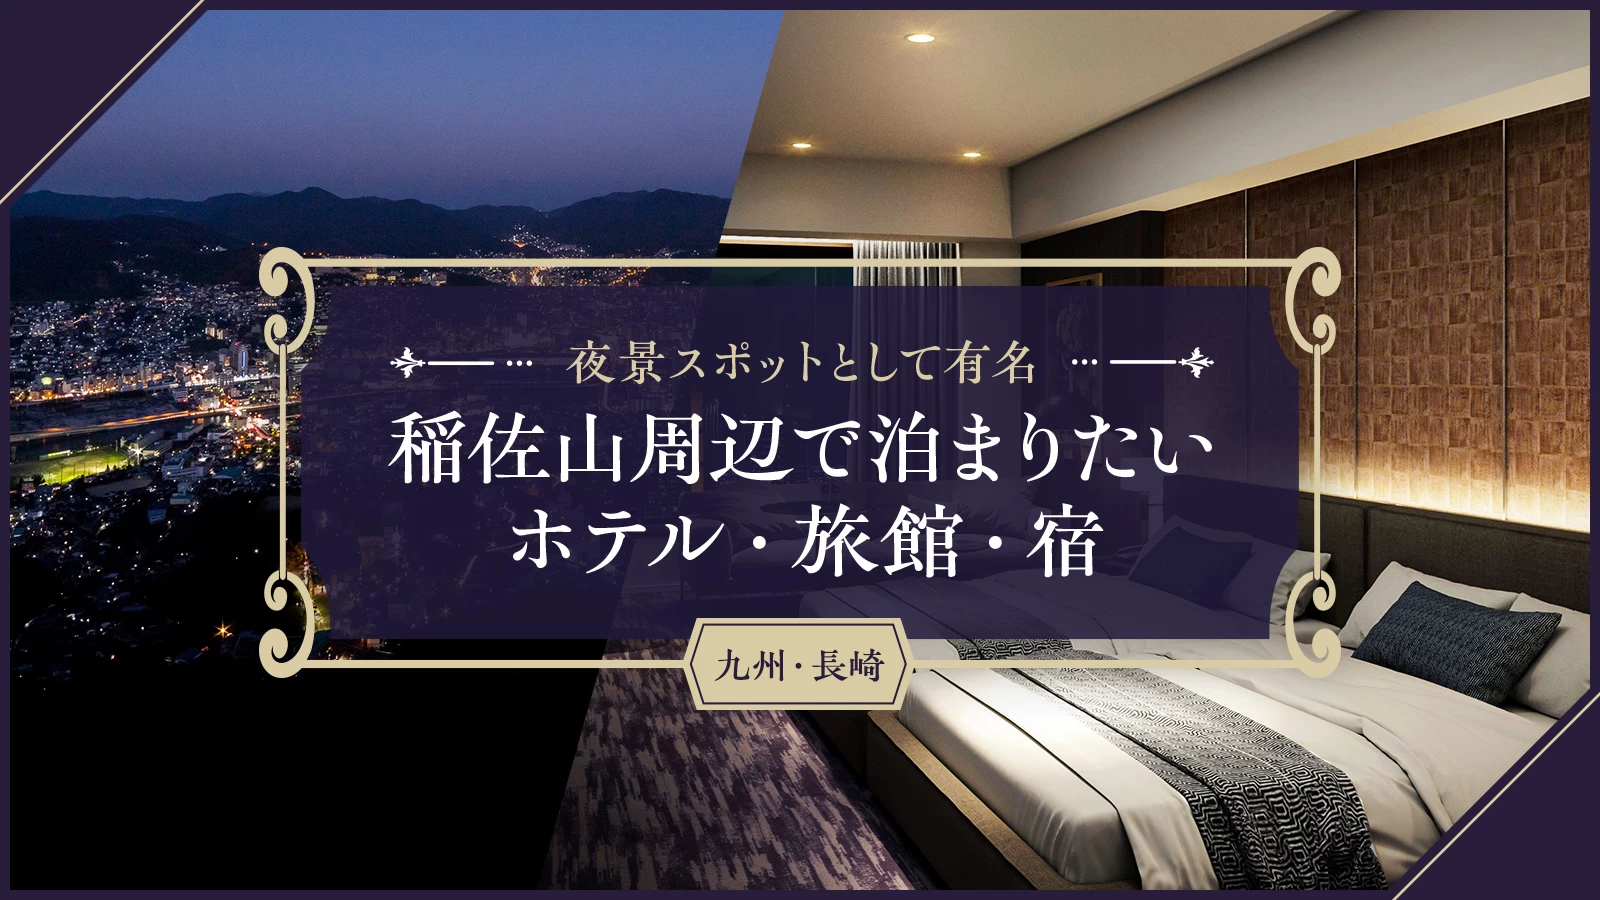 【九州・長崎】夜景スポットとして有名な稲佐山周辺で泊まりたいホテル・旅館・宿4選